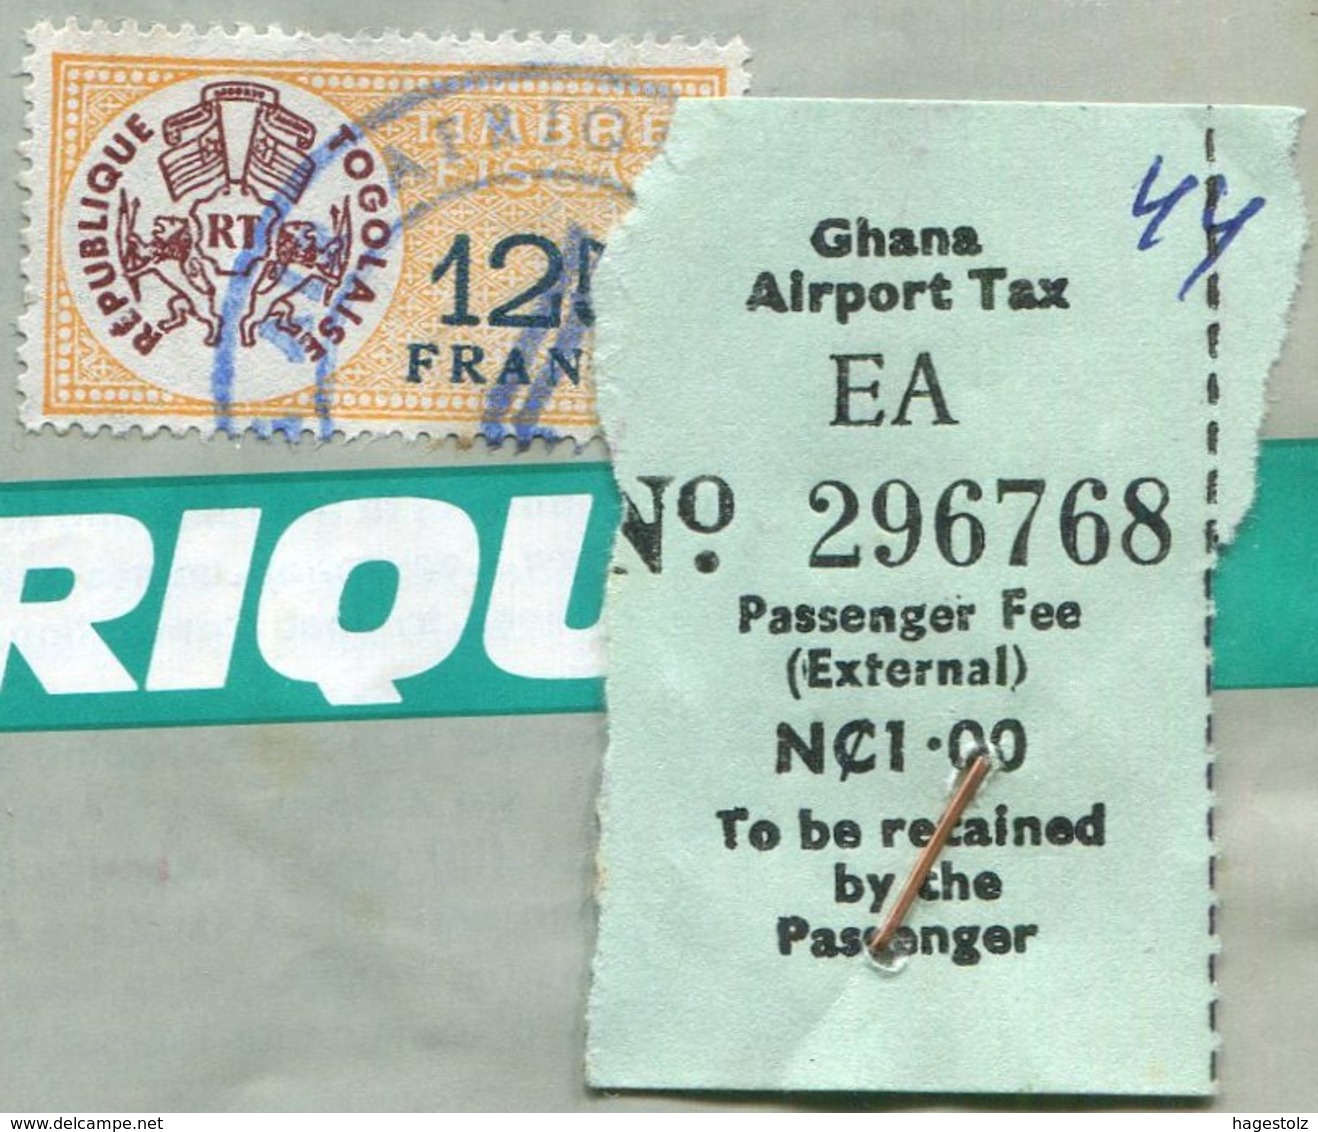 Côte D'Ivoire Ivory Coast 1970 AIR AFRIQUE Airline Passenger Ticket Billet D'avion Ghana Togo AIRPORT TAX Fiscal Revenue - Monde